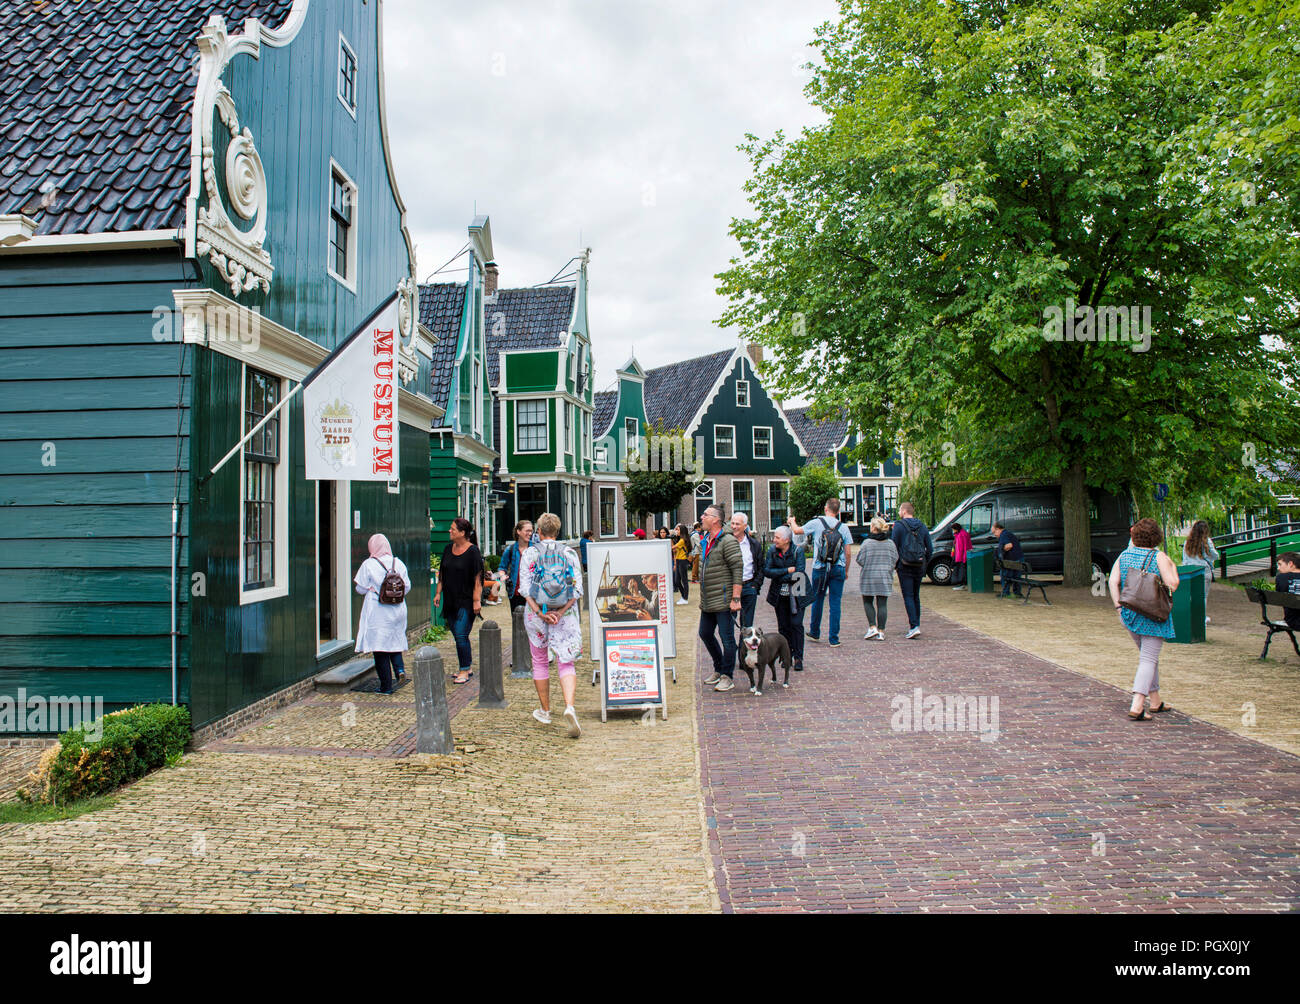 Zaandam,28-aug-2018:persone visitano il vecchio villaggio di zaandam, Zaanse Schans, si tratta di un villaggio con vecchie case come essi dove in Olanda intorno al 1600. nessun ingresso , più un museo a cielo aperto Foto Stock